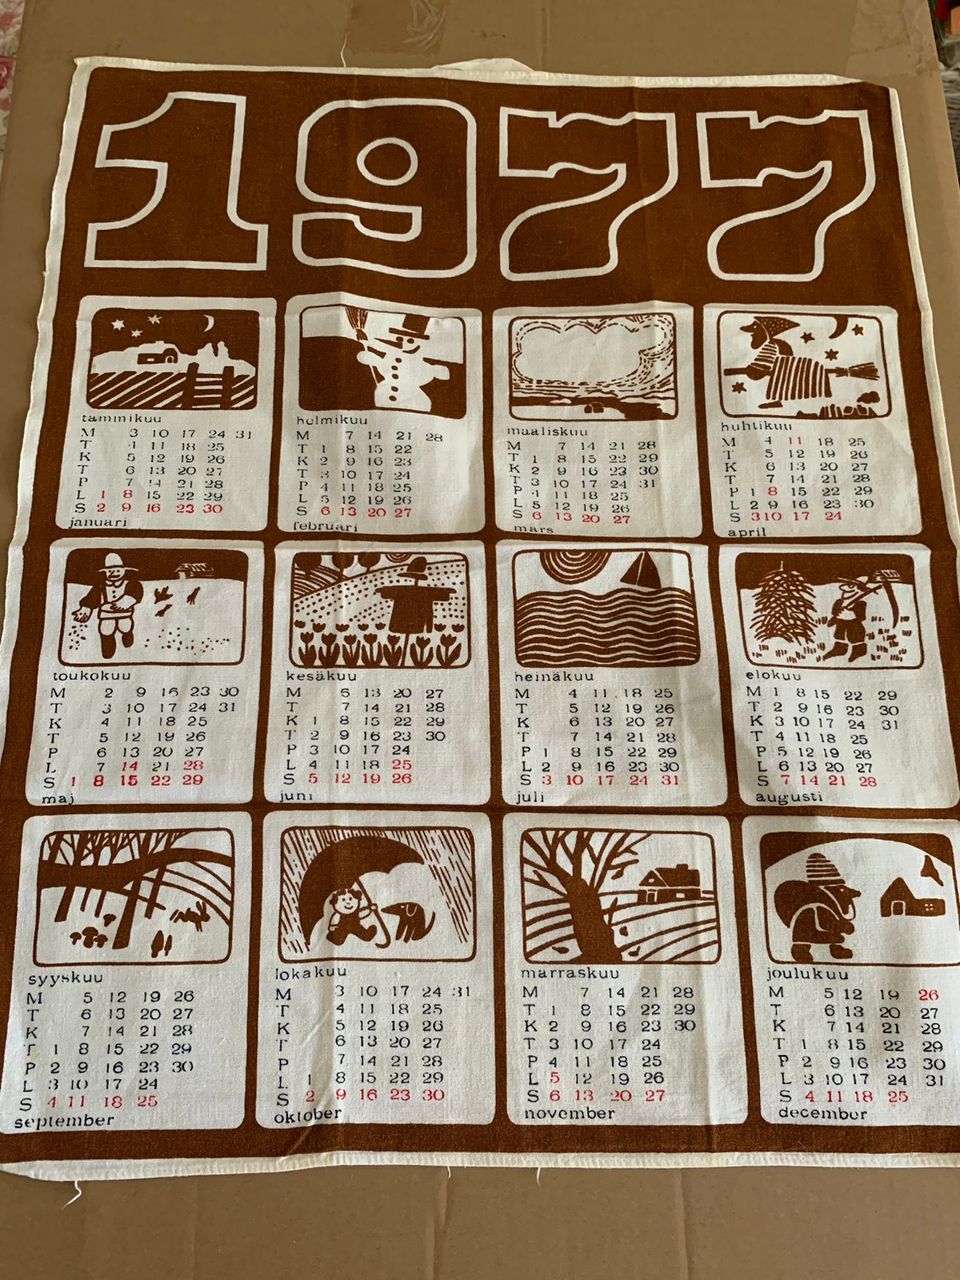 Kalenteripyyhe 1977